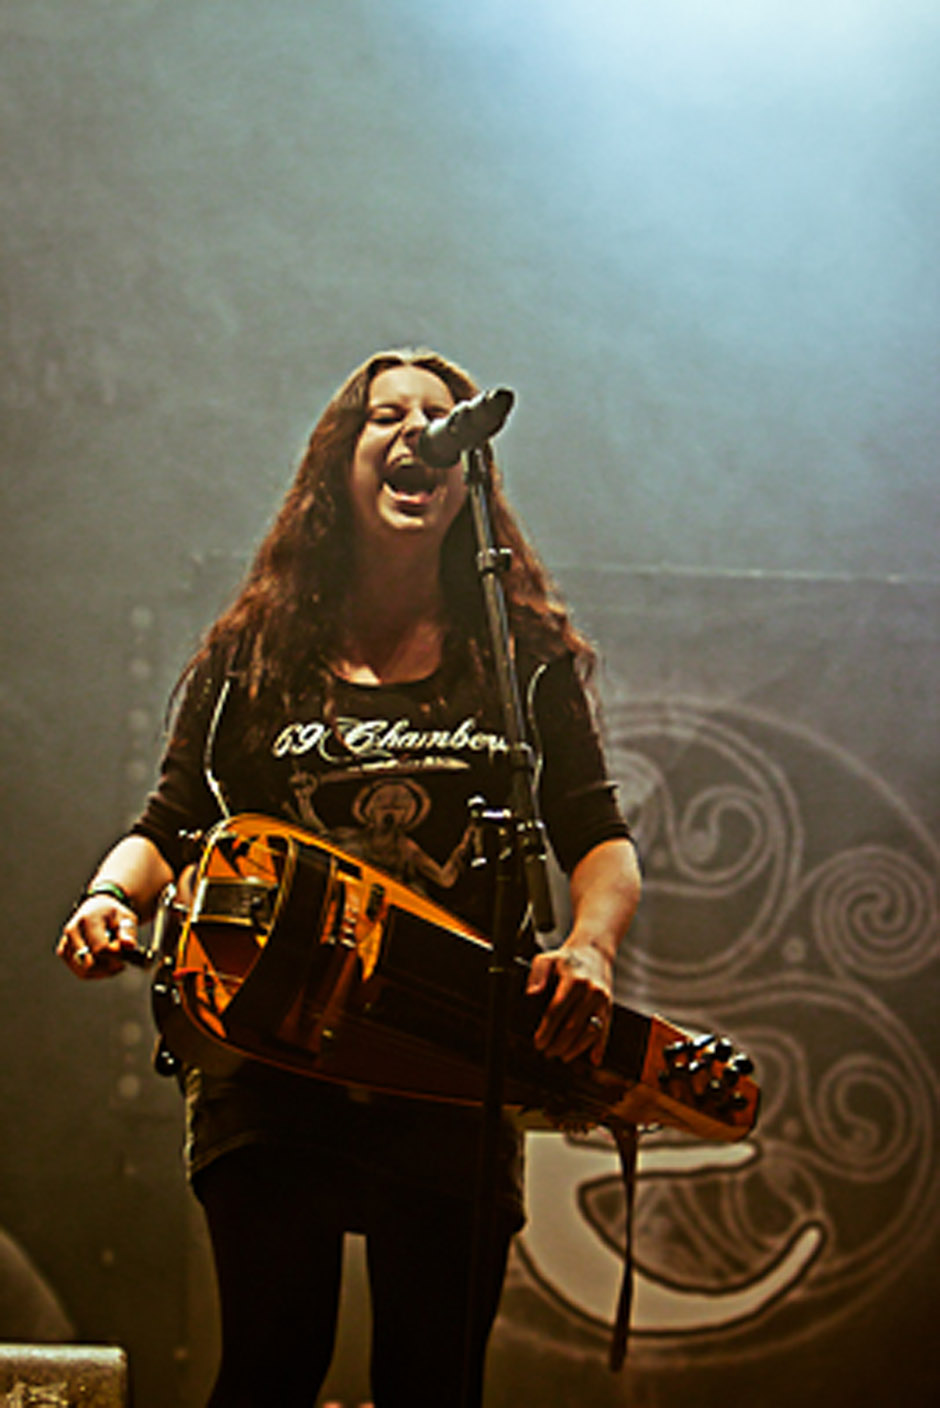 Eluveitie live, Summer Breeze 2012